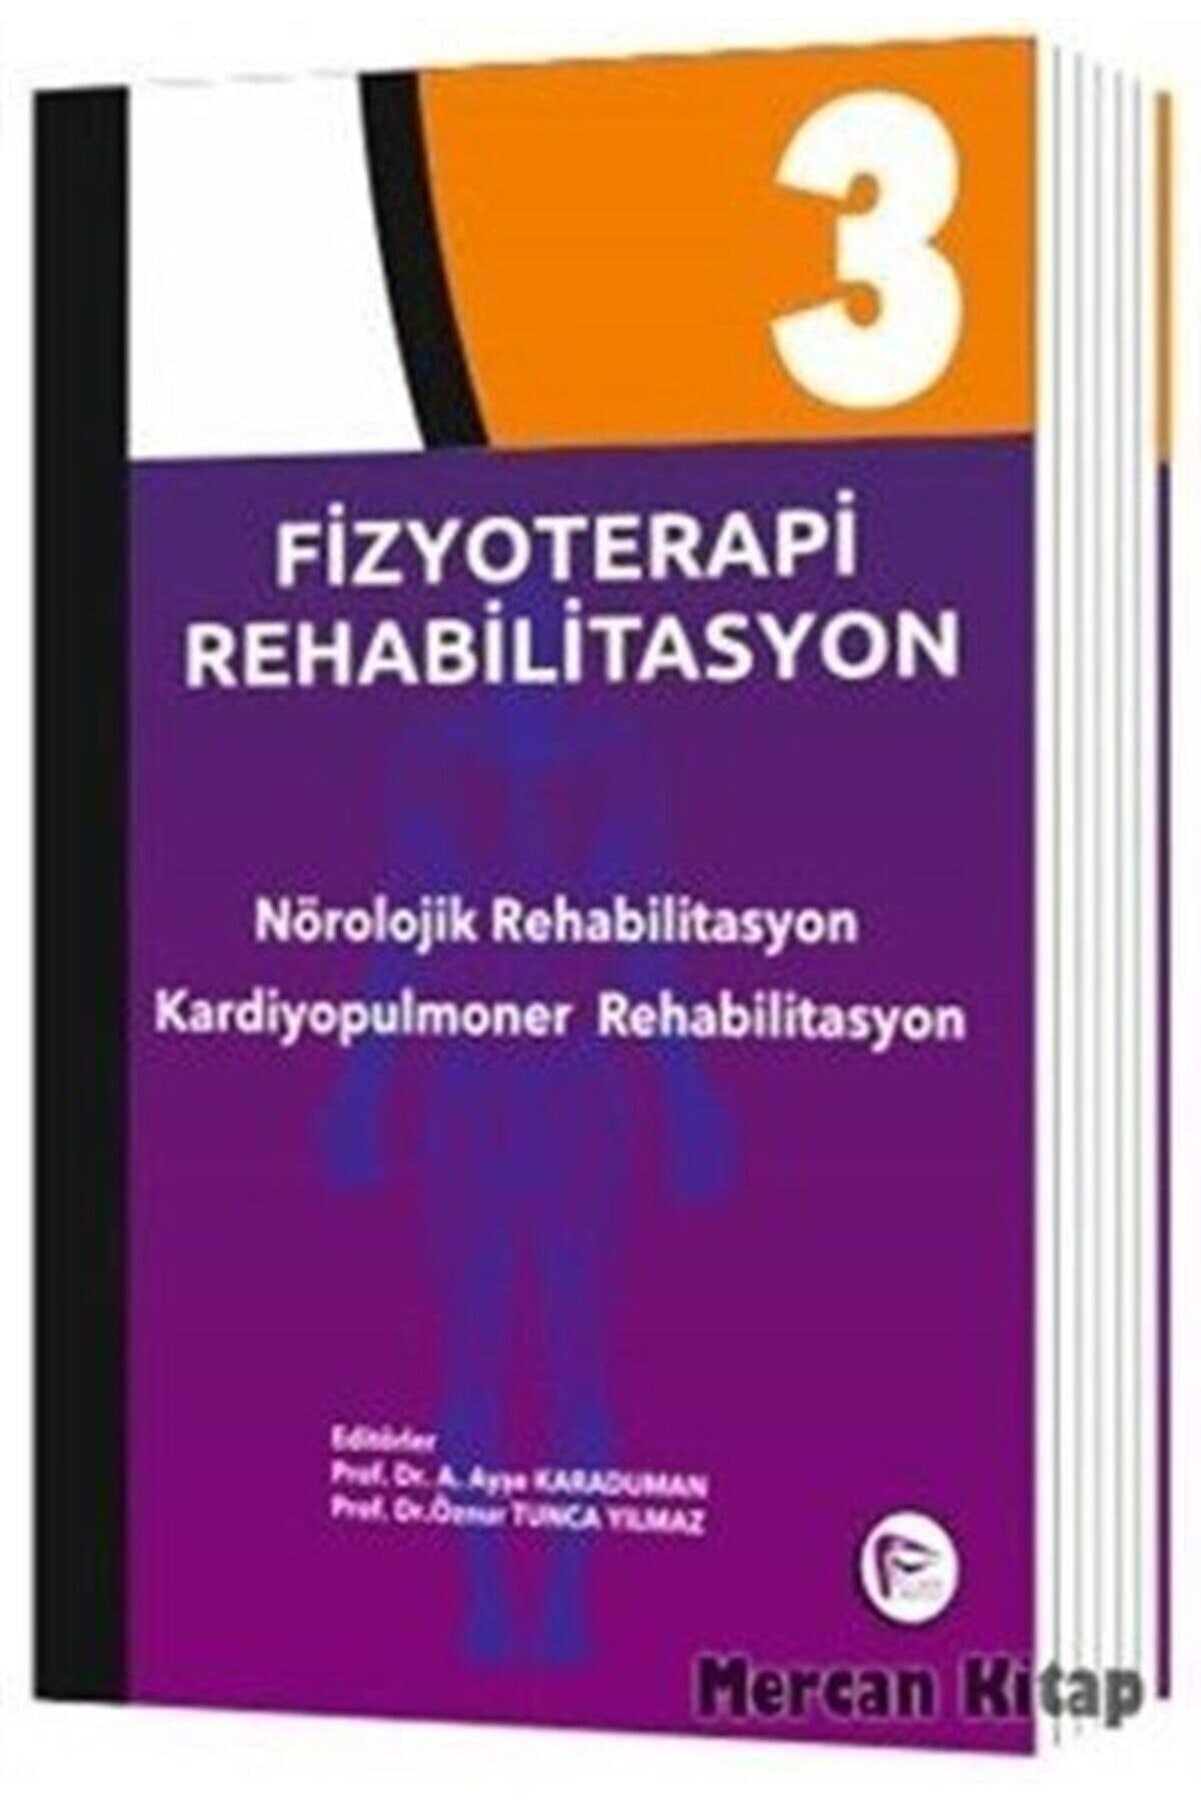 Hipokrat Kitabevi Fizyoterapi Rehabilitasyon 3 & Nörolojik Rehabilitasyon Kardiyopulmoner Rehabilitasyon